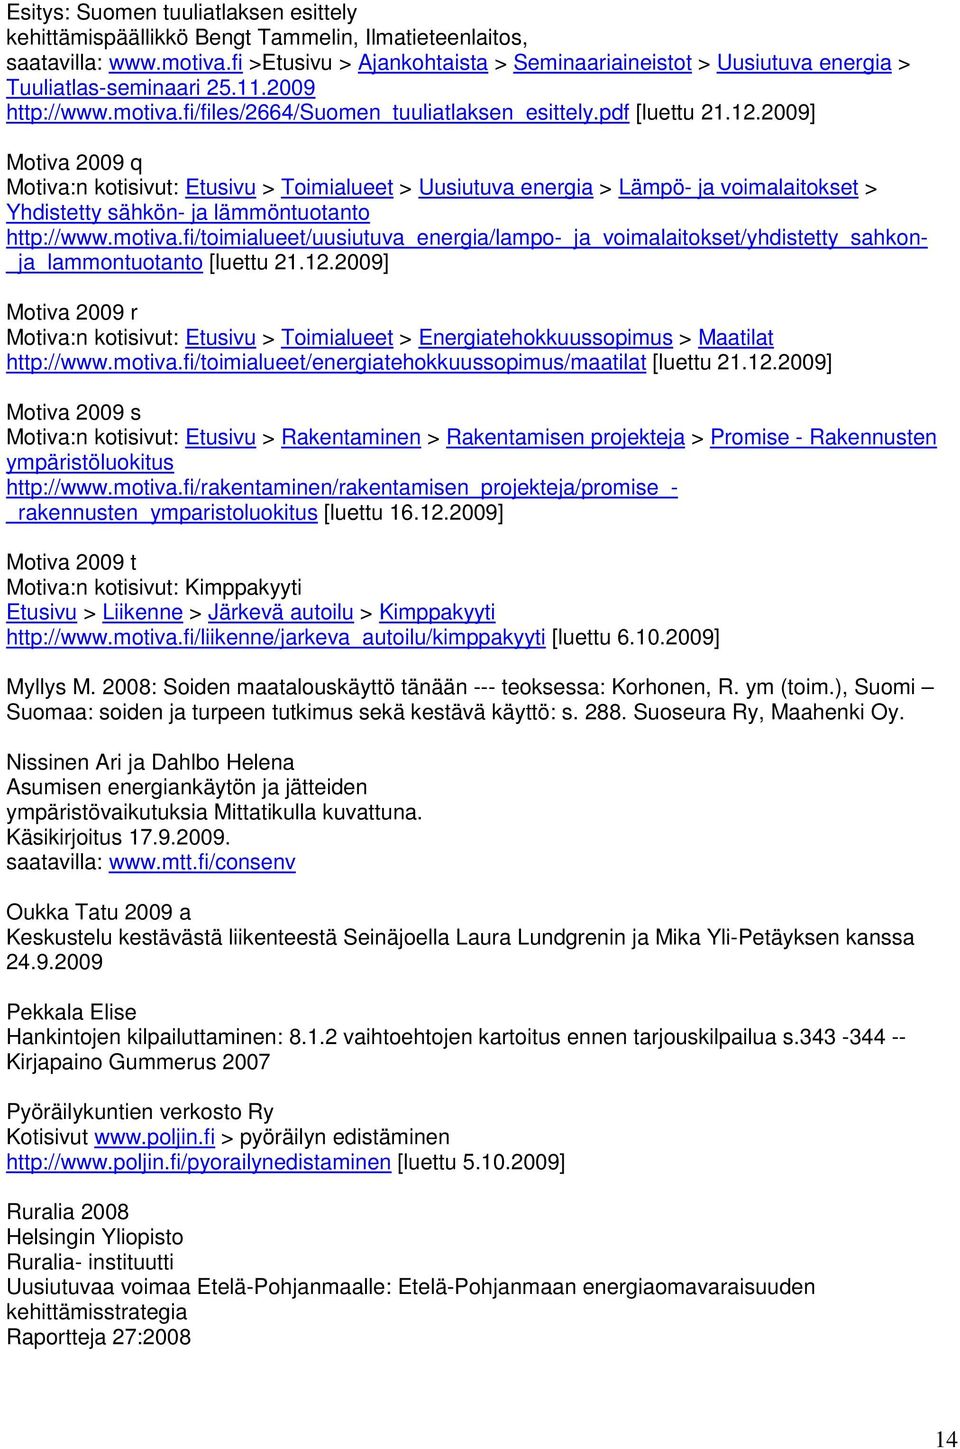 2009] Motiva 2009 q Motiva:n kotisivut: Etusivu > Toimialueet > Uusiutuva energia > Lämpö- ja voimalaitokset > Yhdistetty sähkön- ja lämmöntuotanto http://www.motiva.